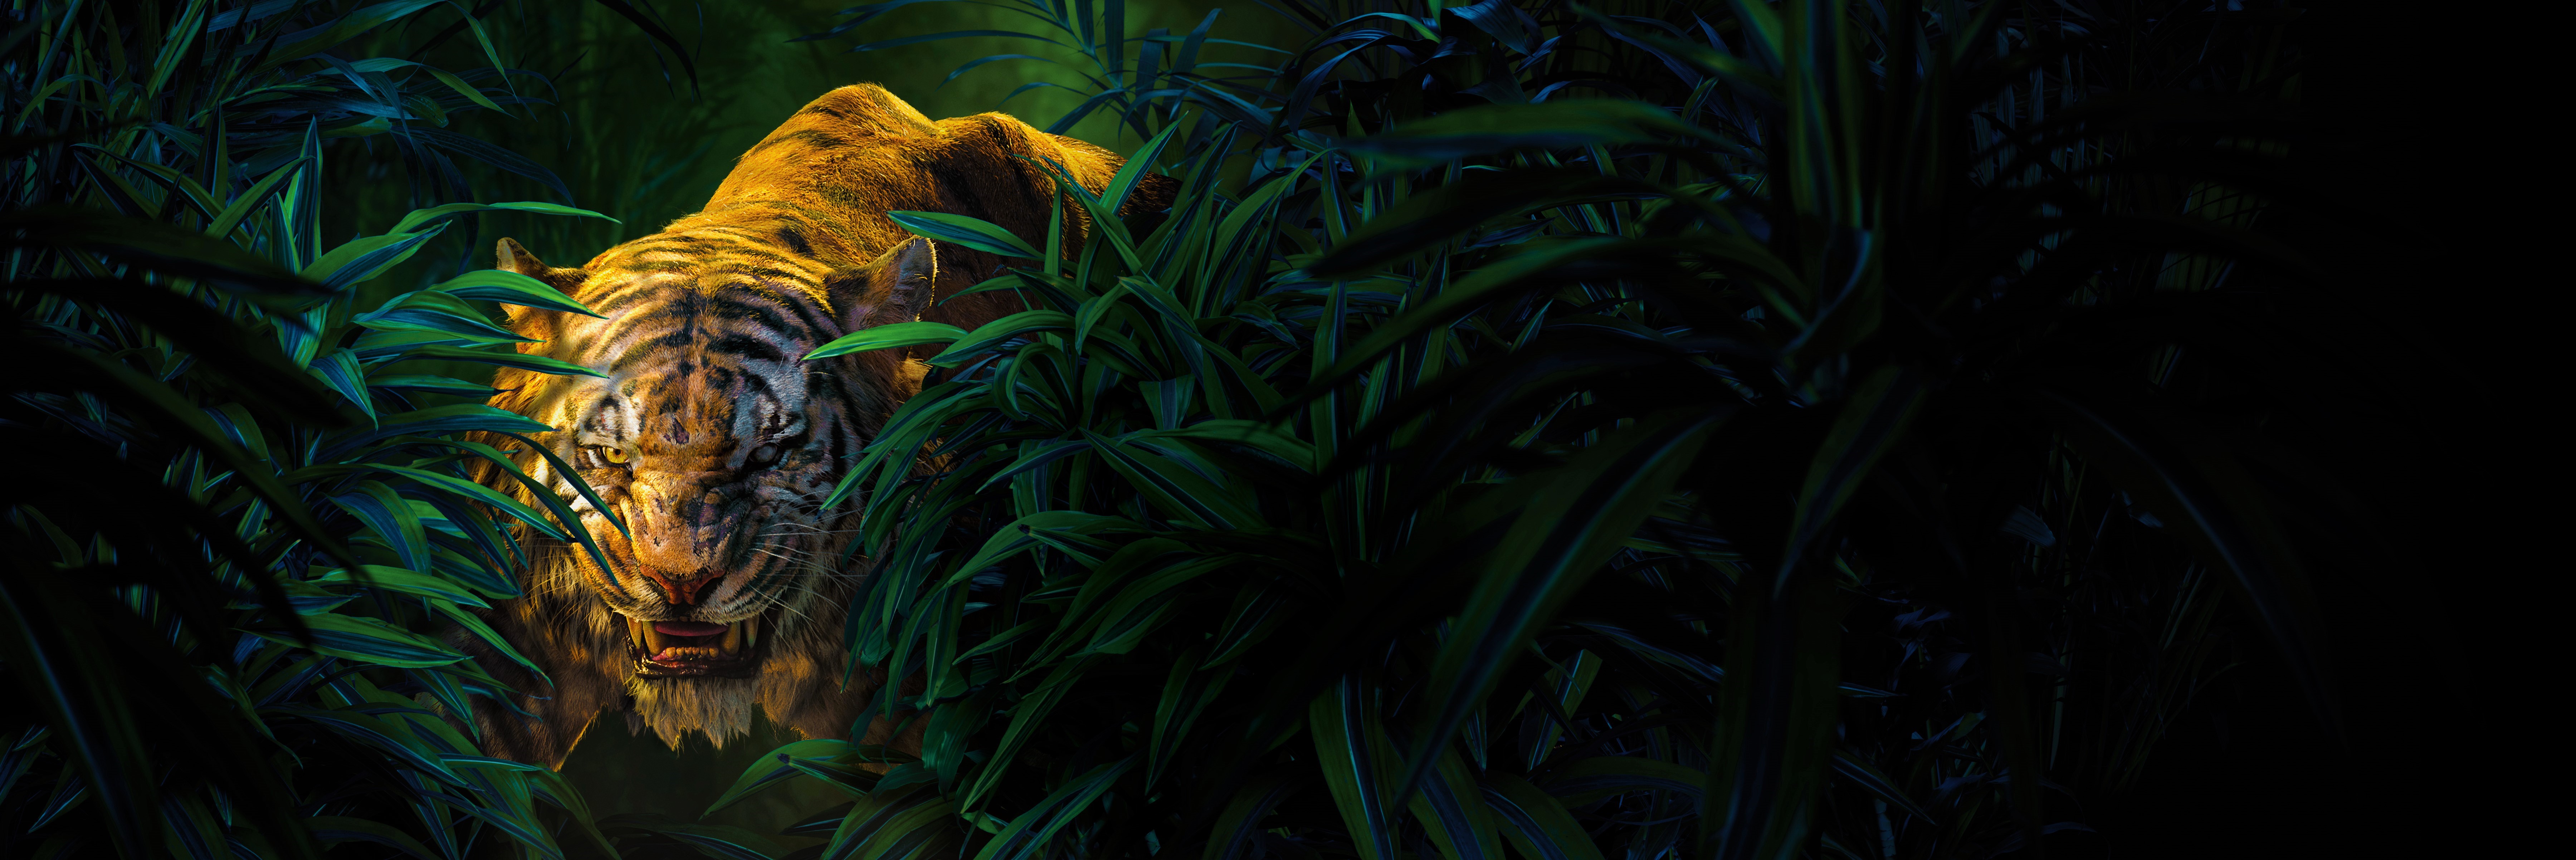 HQ The Jungle Book Background